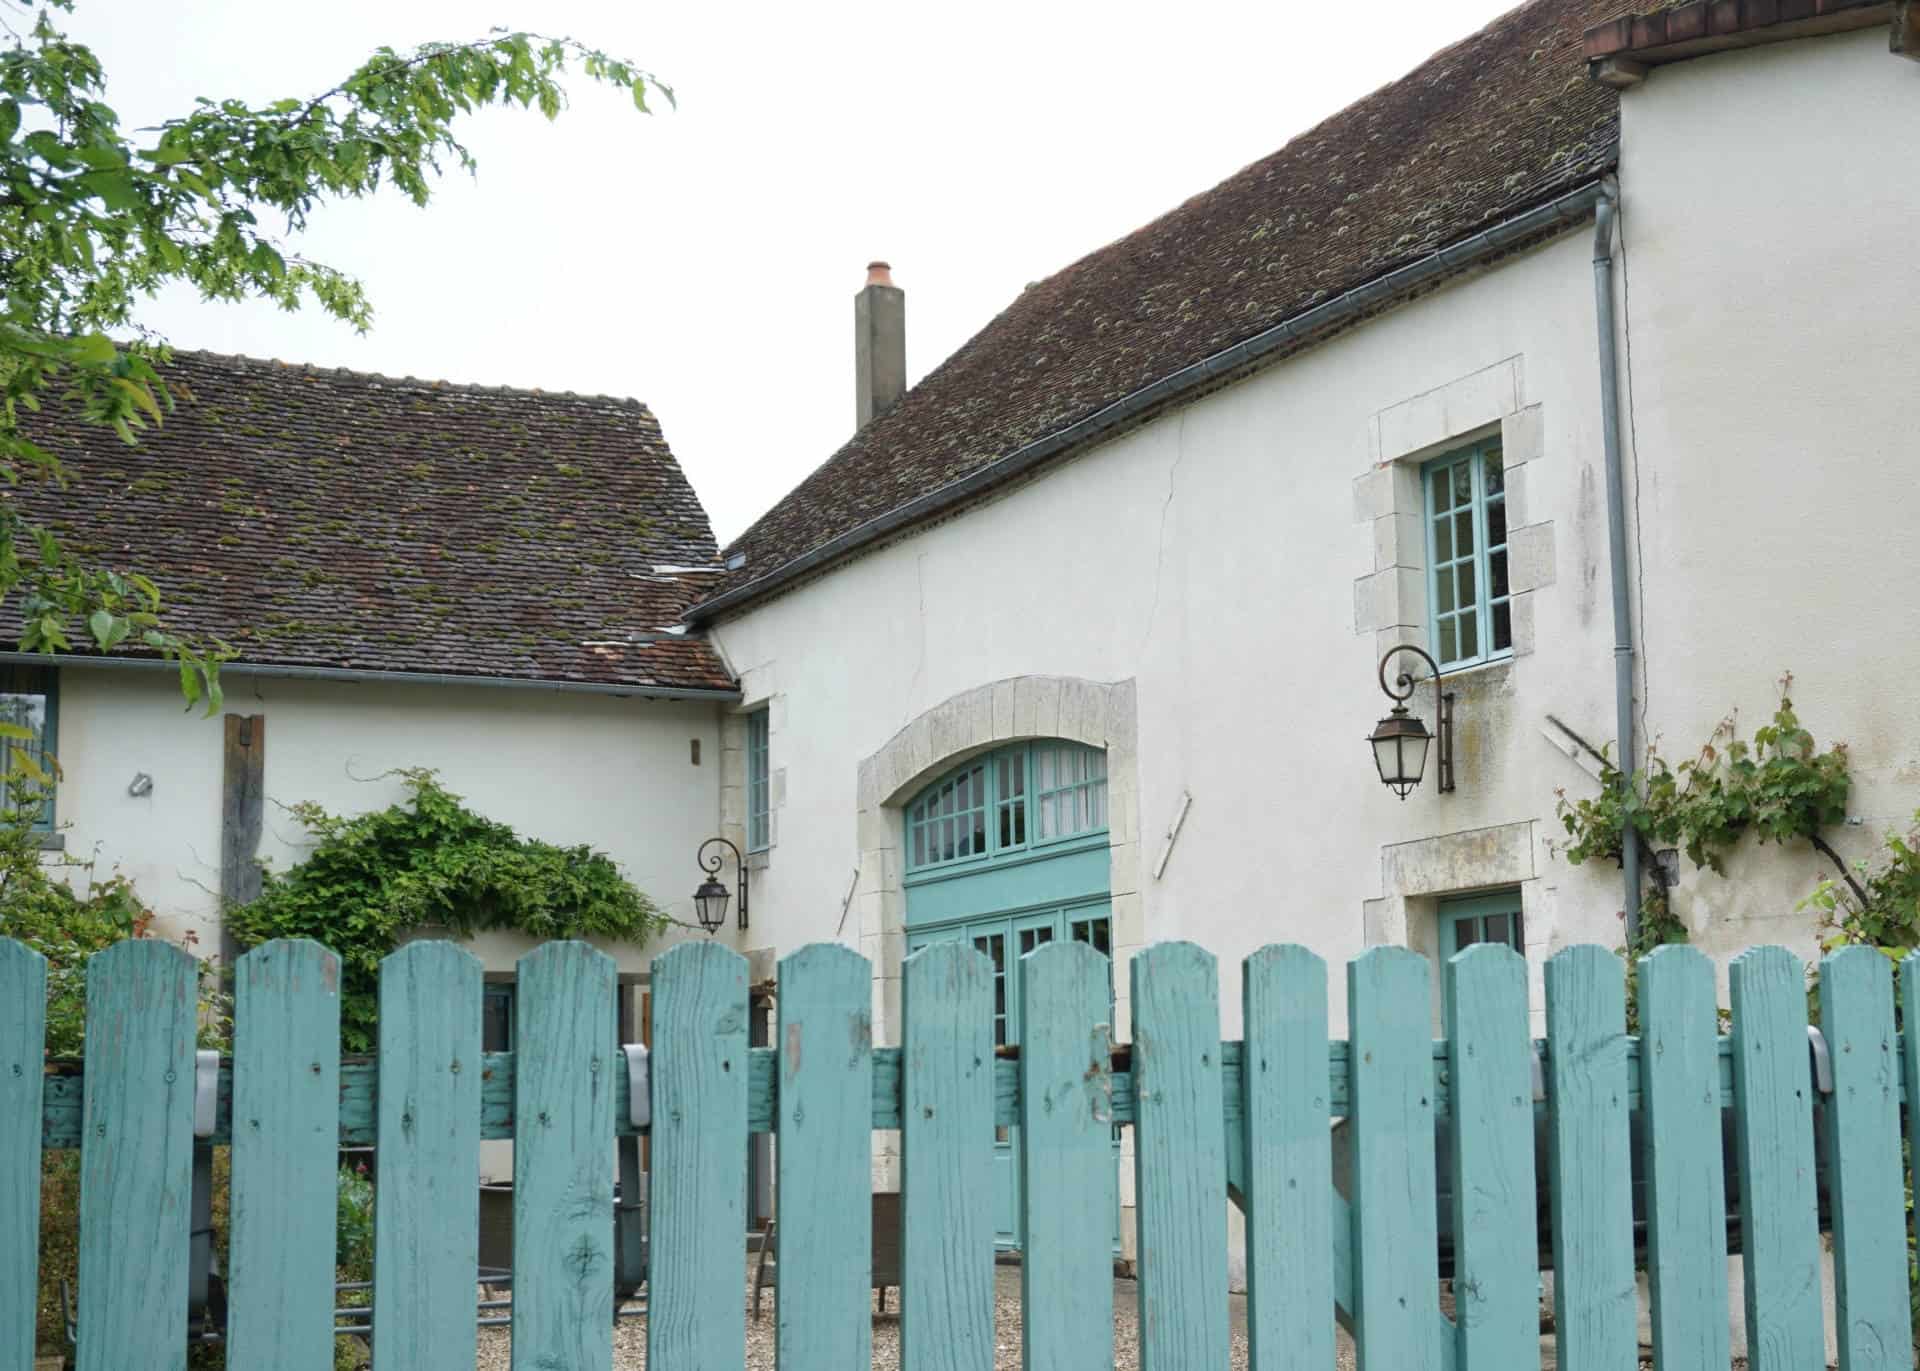 Domaine de Varenne in Saint-Amand-en-Puisaye.